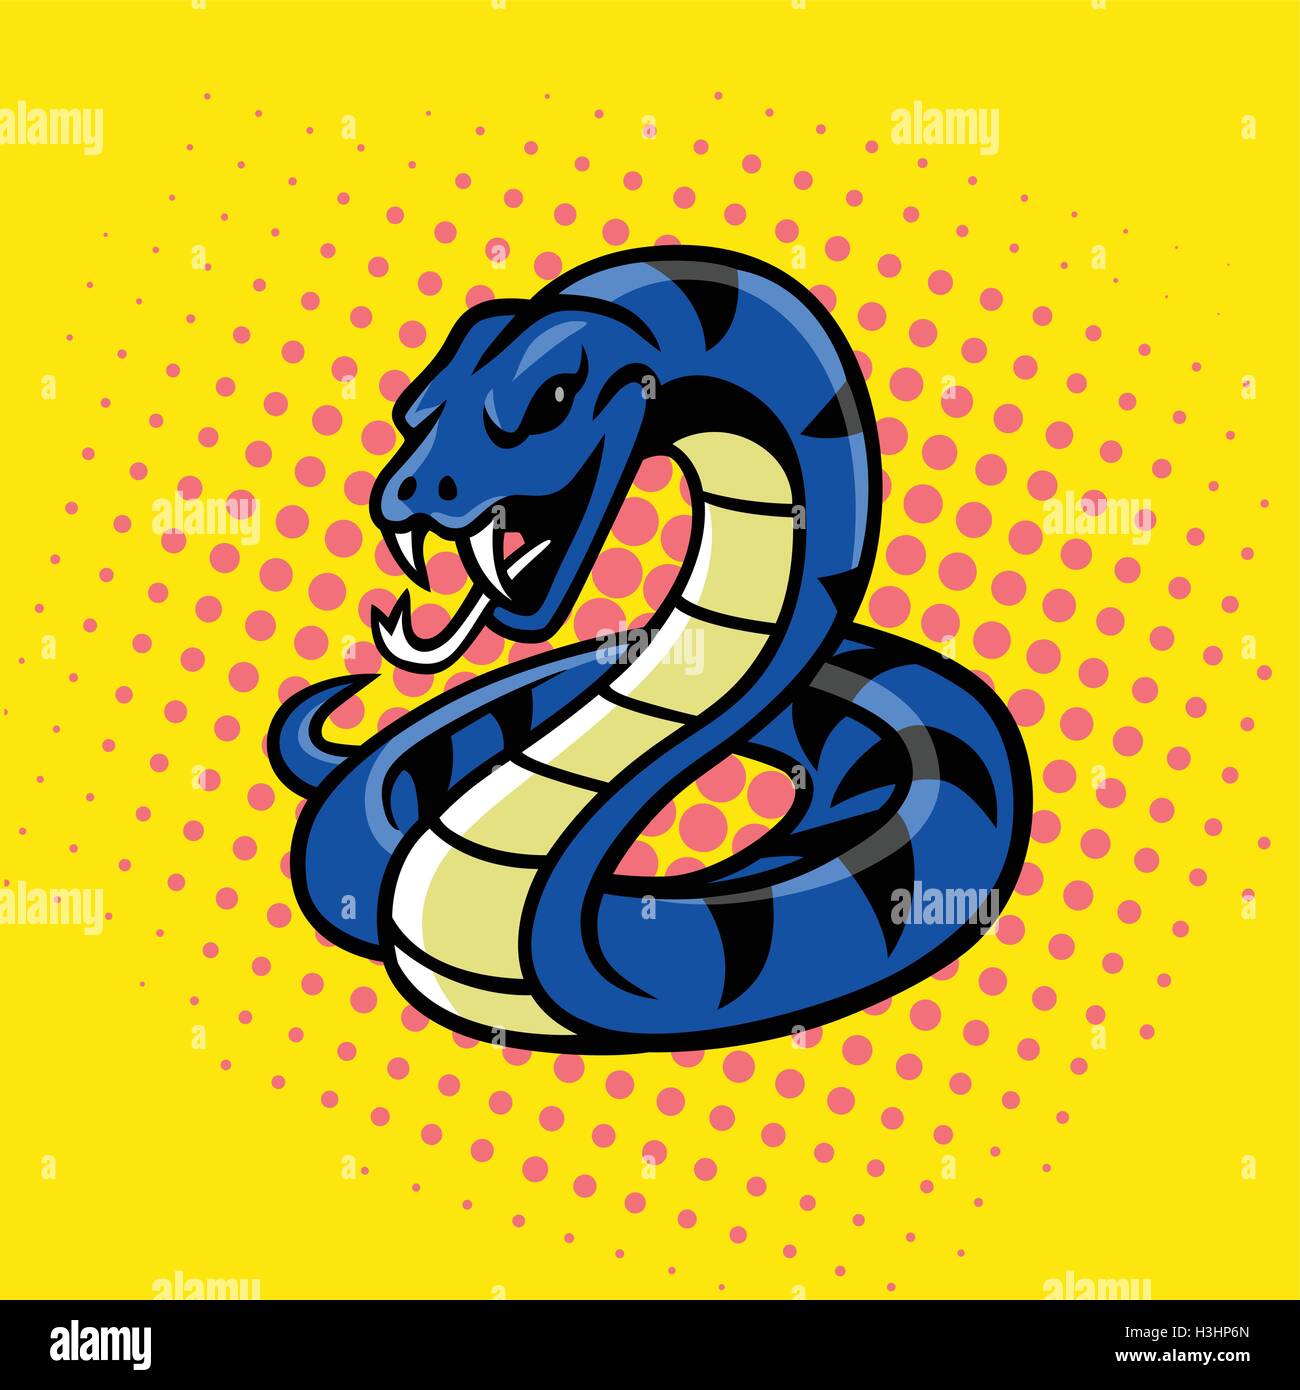 Viper Snake Pop Art Style Vector Stock Vector